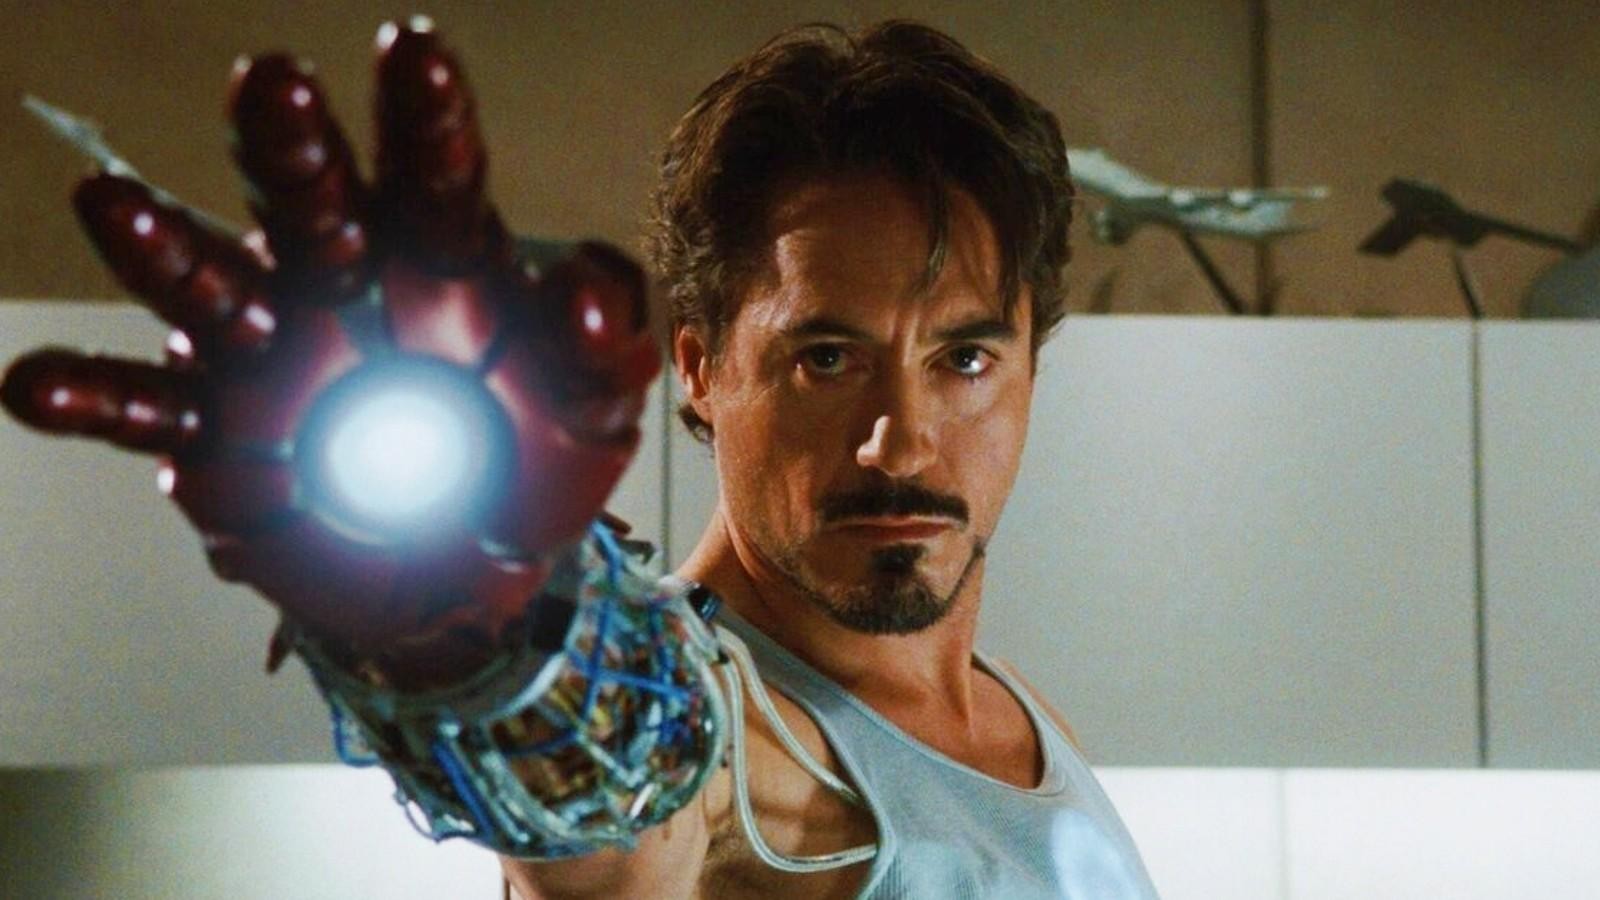 Robert Downey Jr as Iron Man 